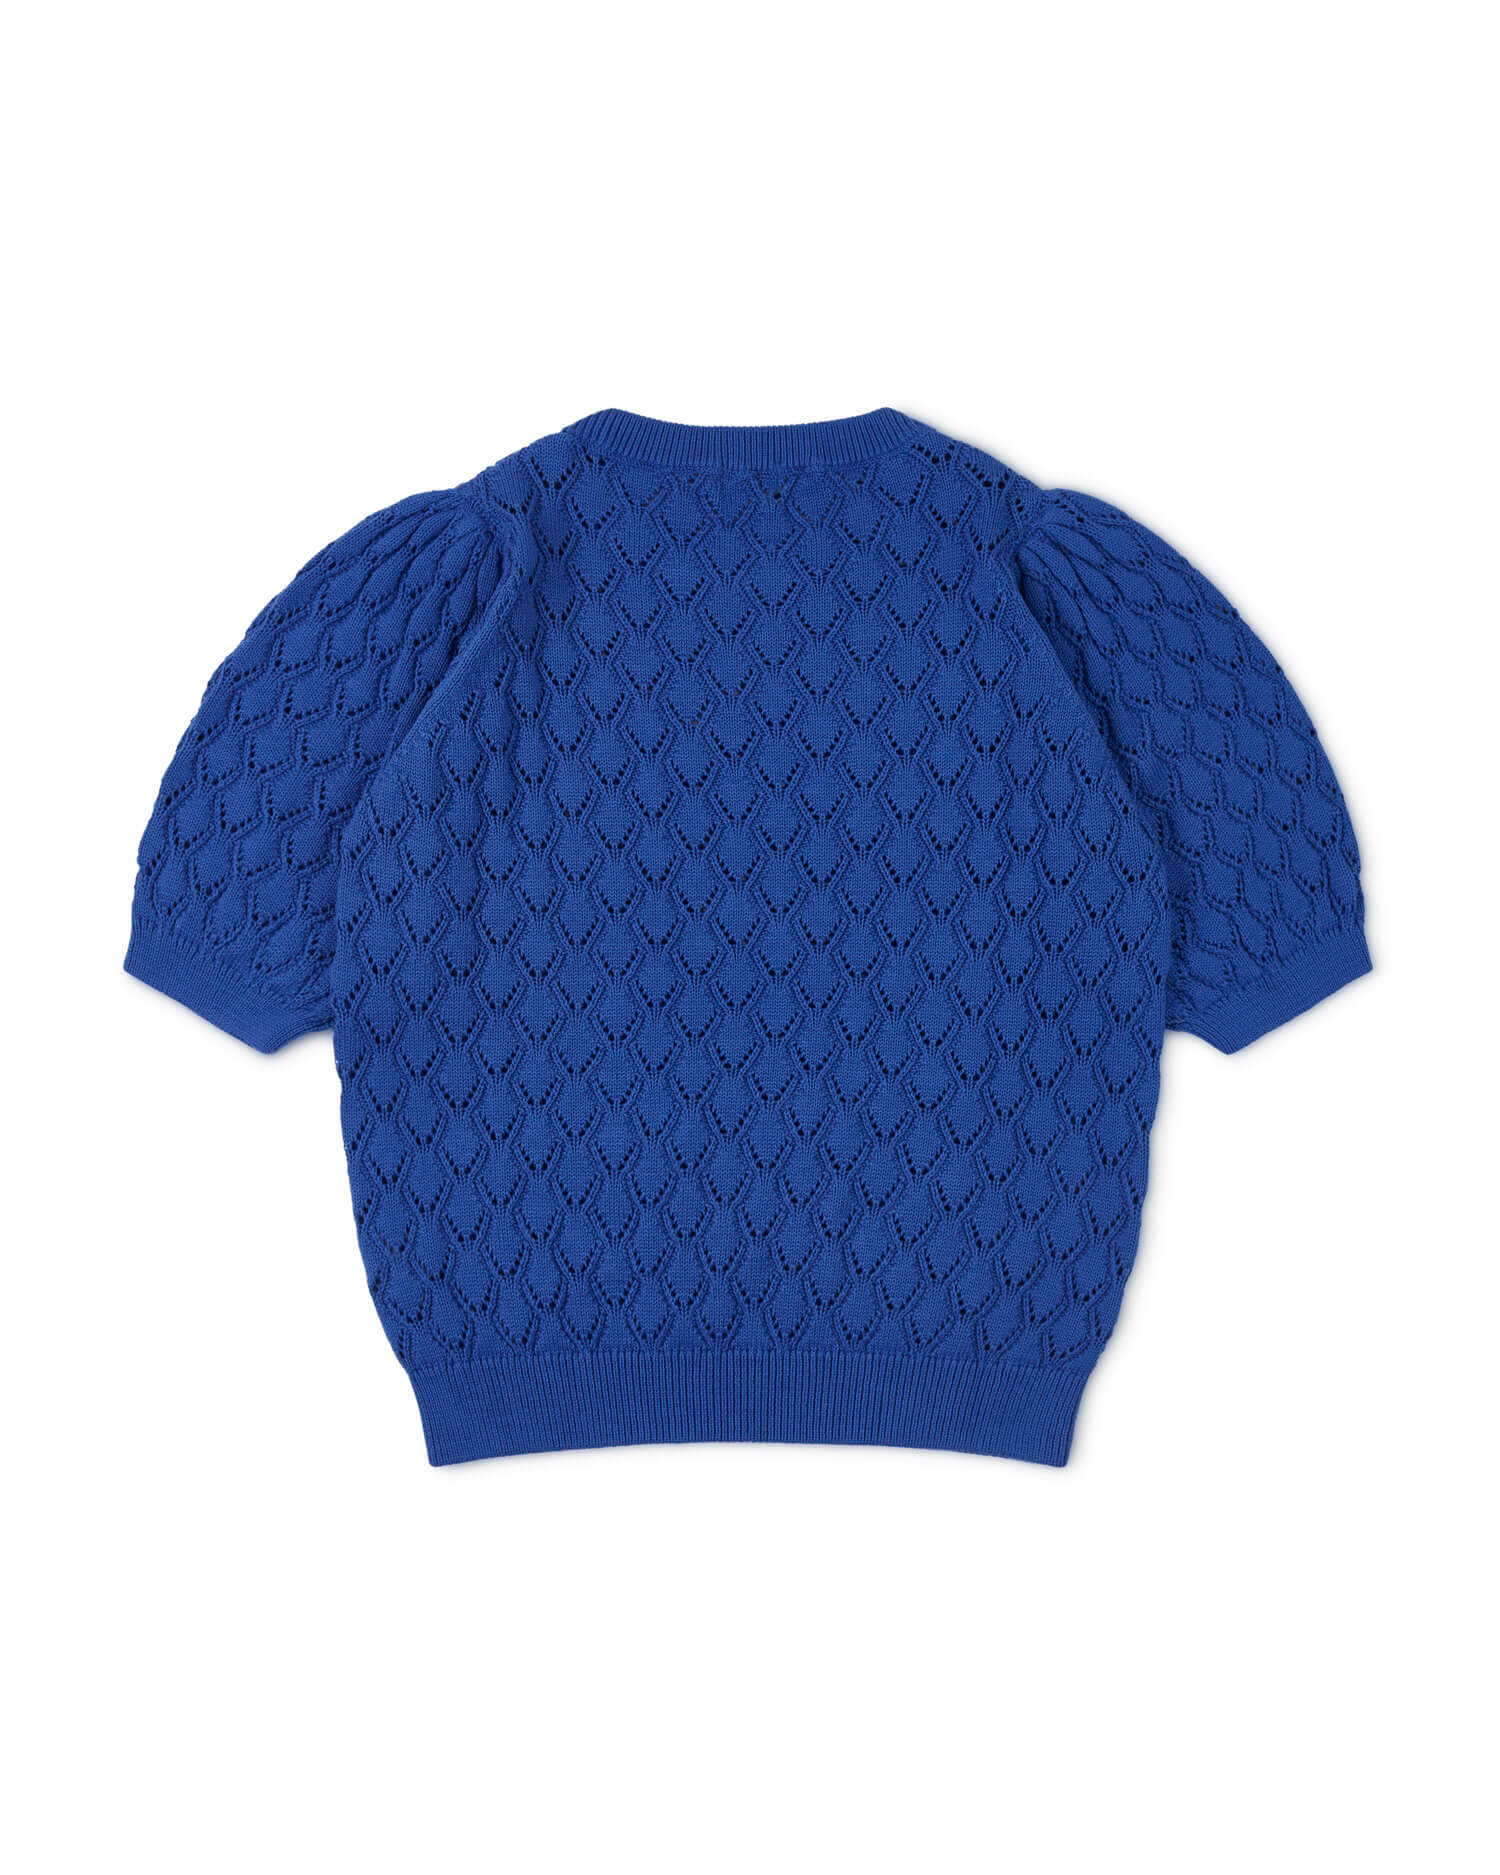 Chemisier tricoté bleu en coton 100% biologique de Matona